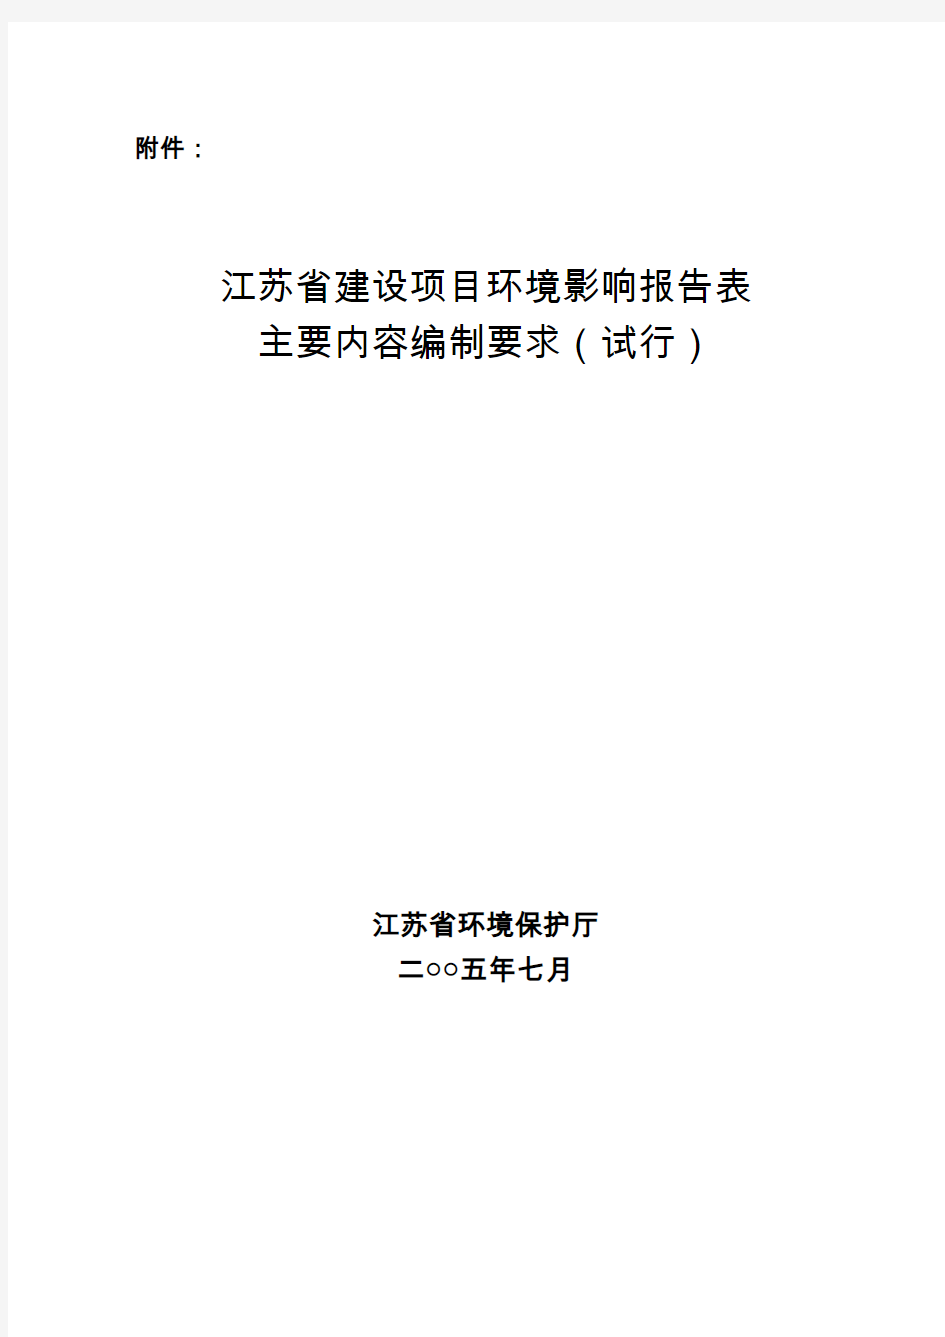 江苏省建设项目环境影响报告表主要内容编制要求(试行)-2005